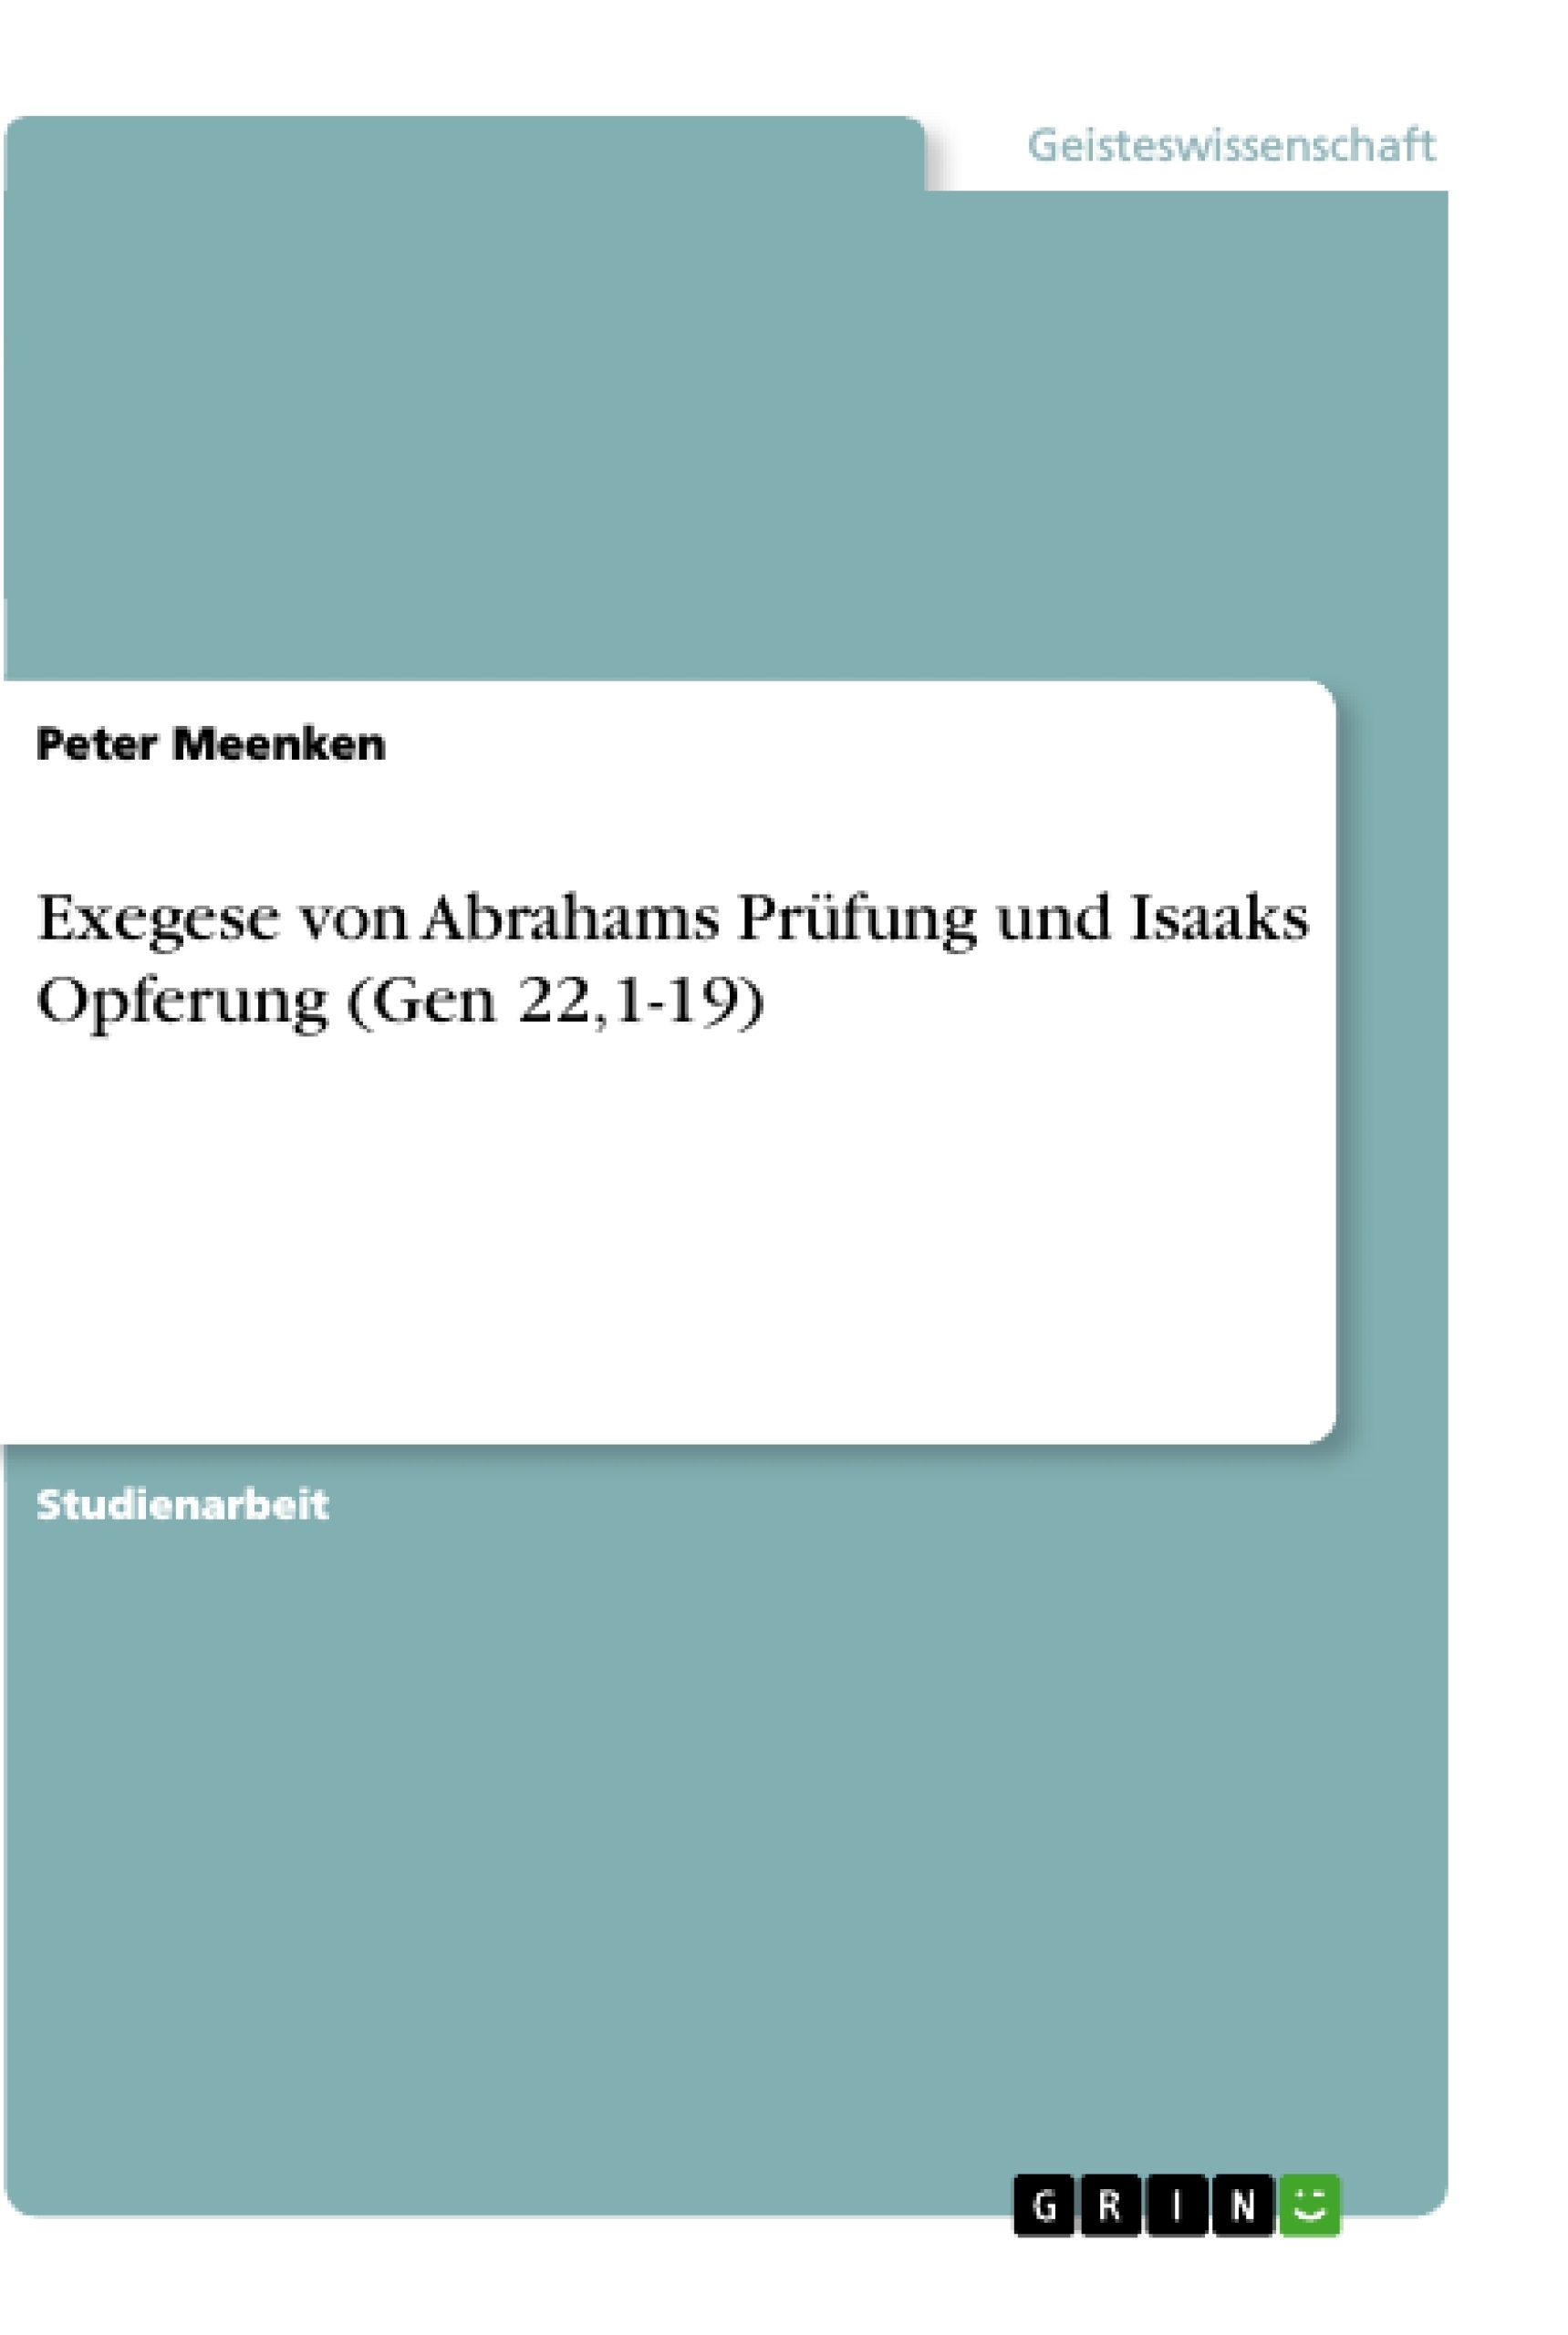 Title: Exegese von Abrahams Prüfung und Isaaks Opferung (Gen 22,1-19)